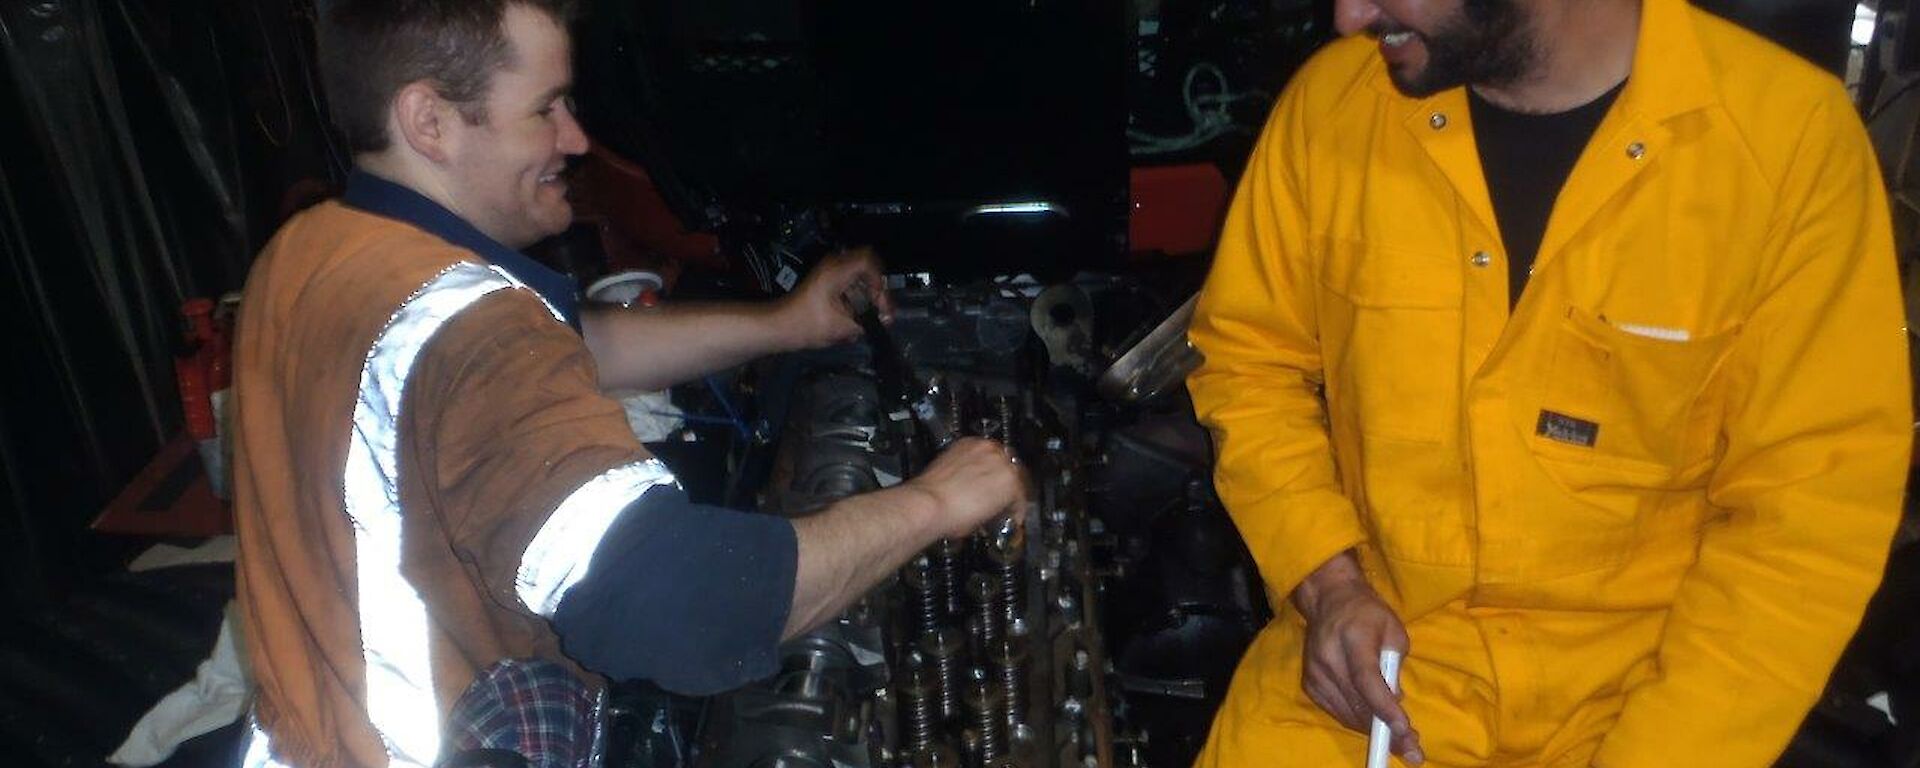 Diesel mechancis at work